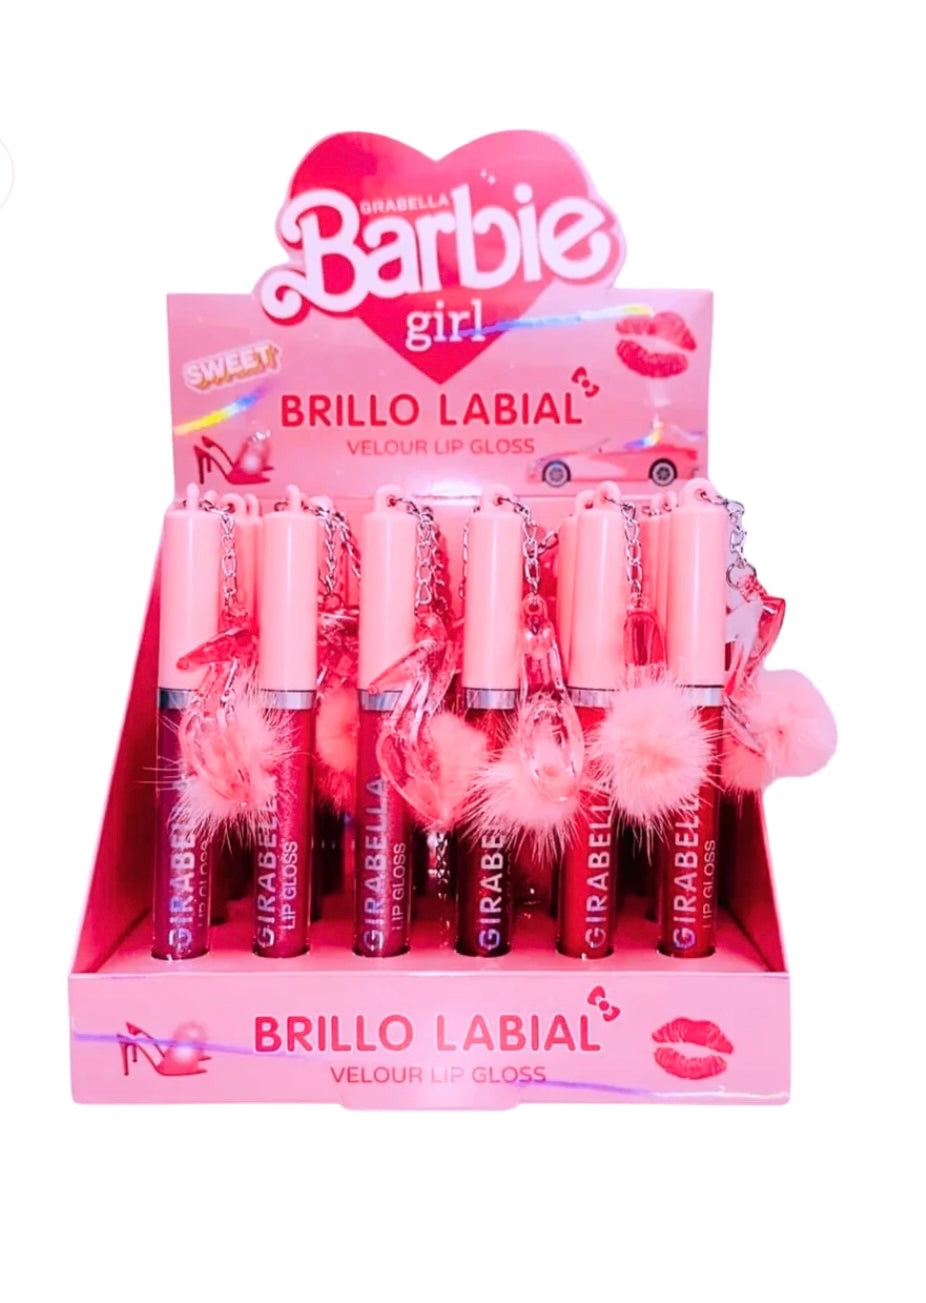 Grabella Barbie girl Brillo Labial Lip Gloss